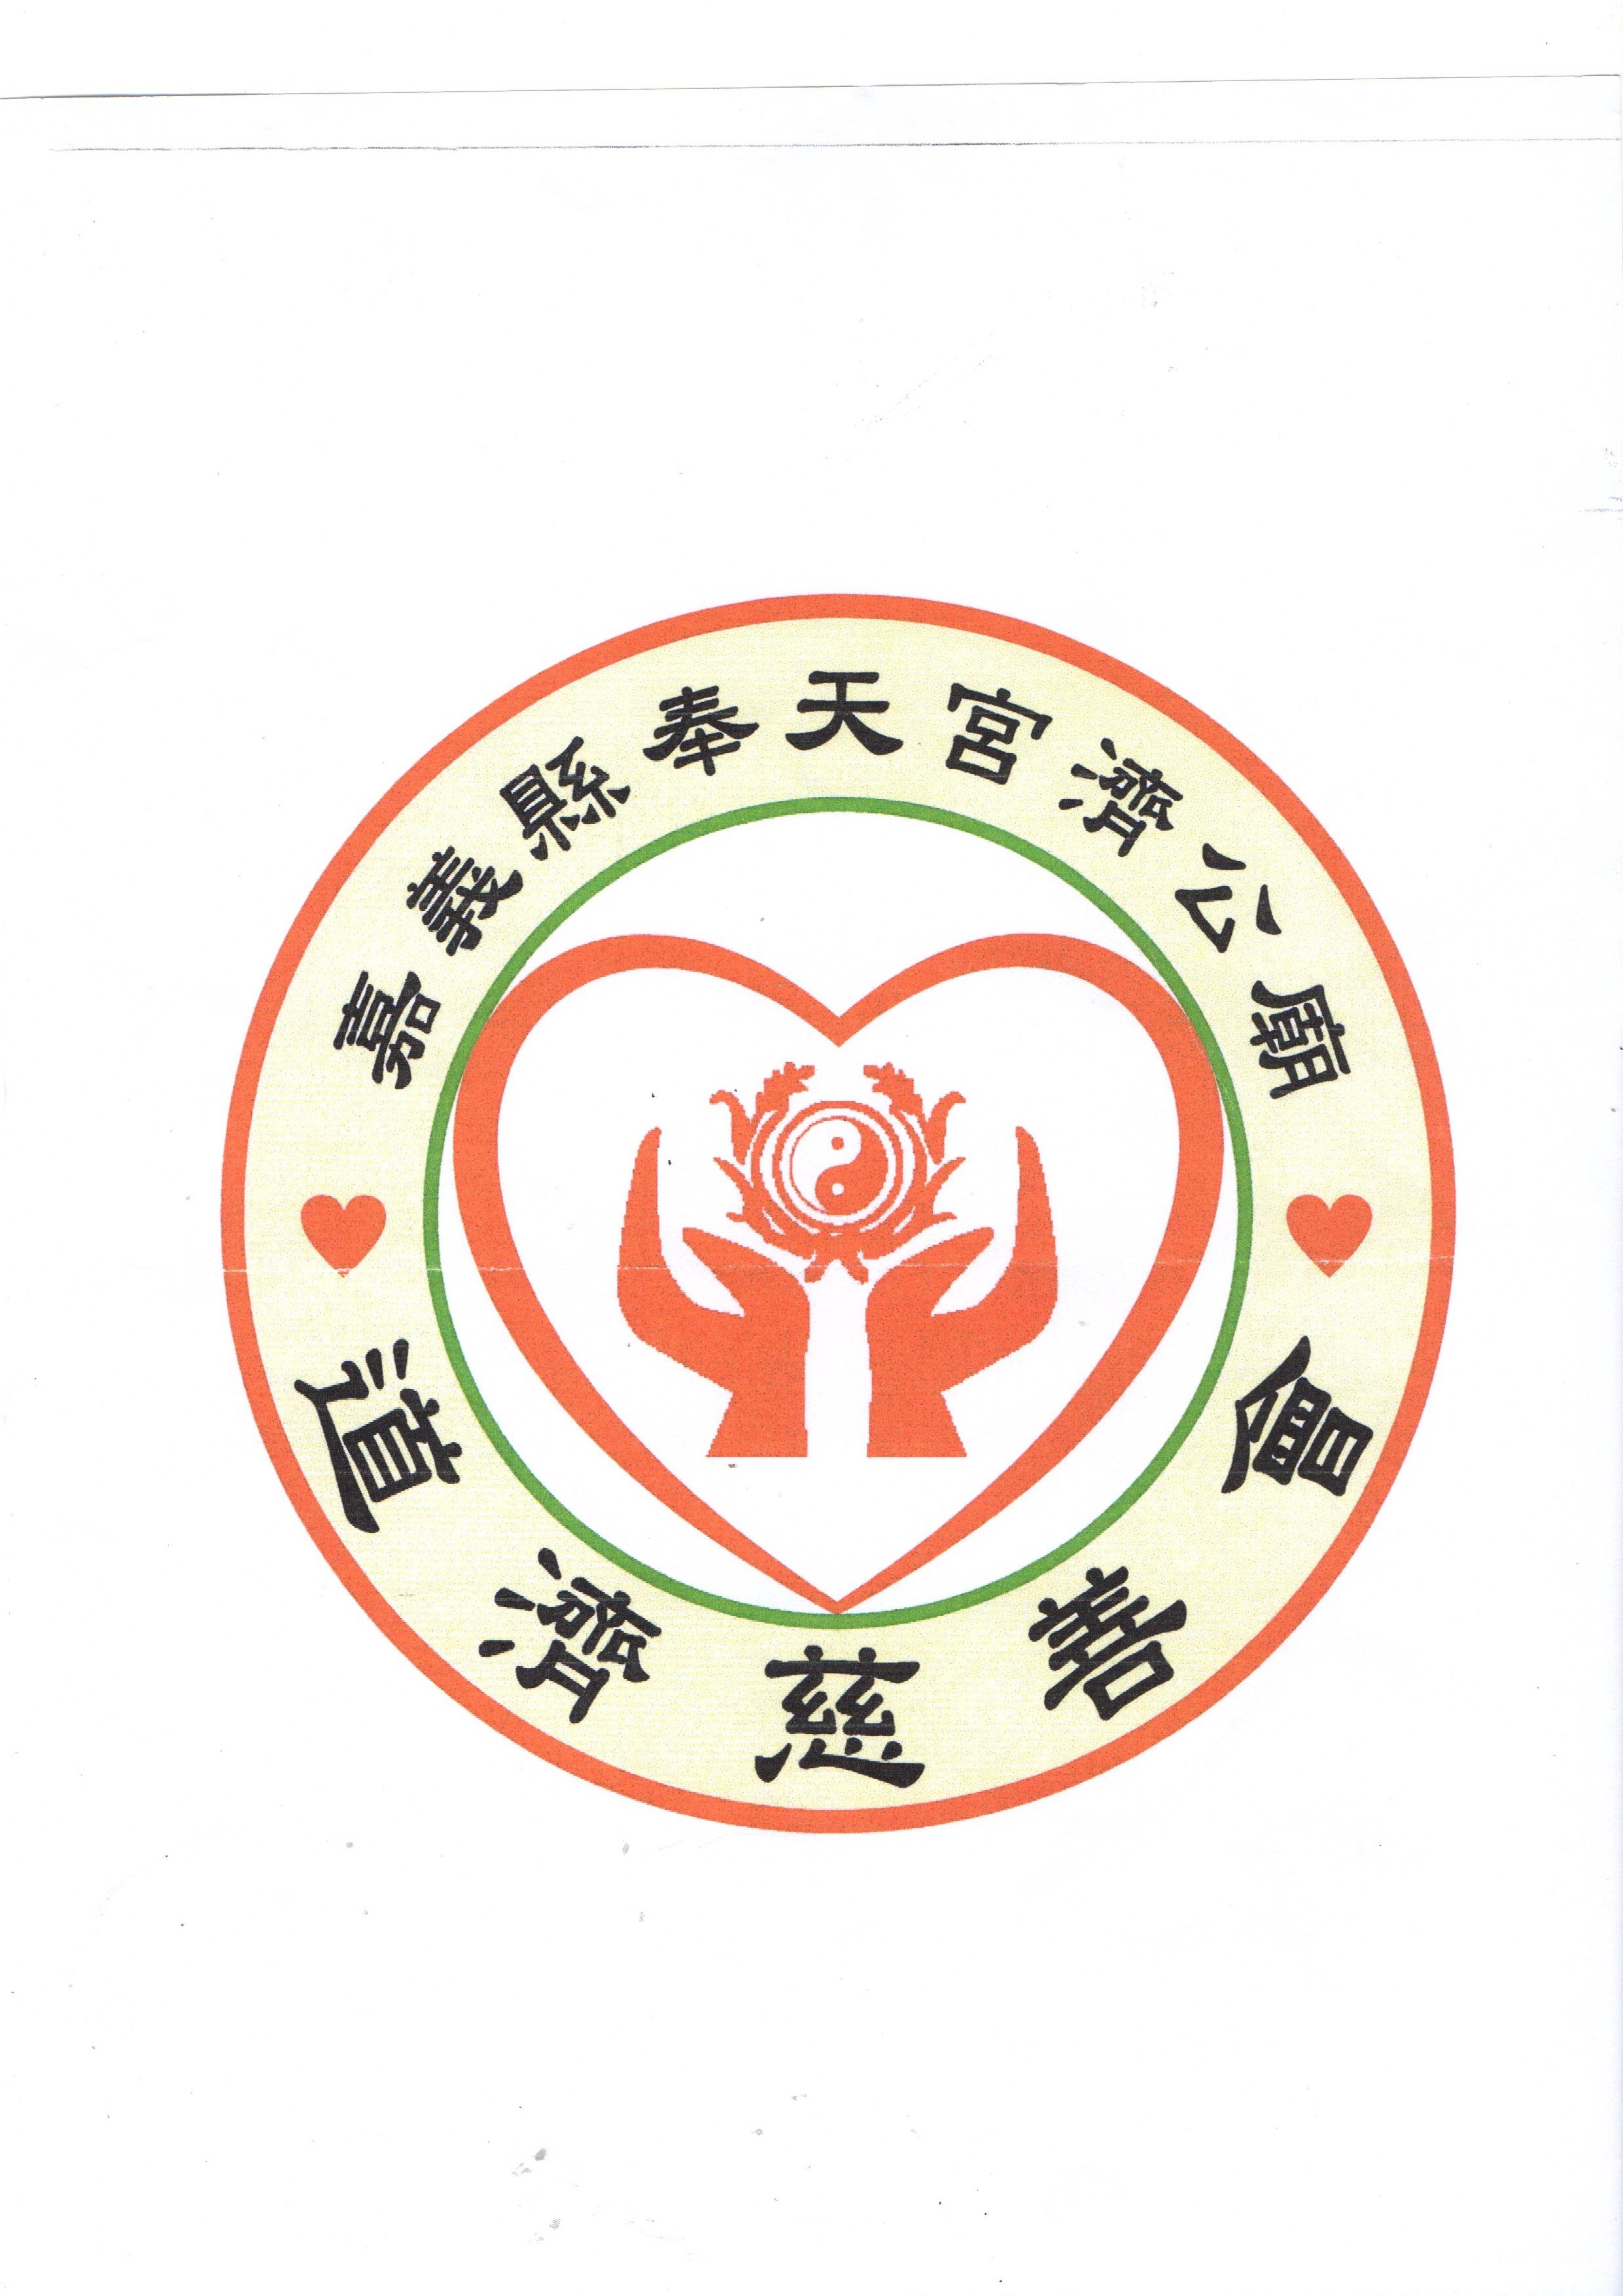 嘉義縣奉天宮濟公廟道濟慈善會-Logo